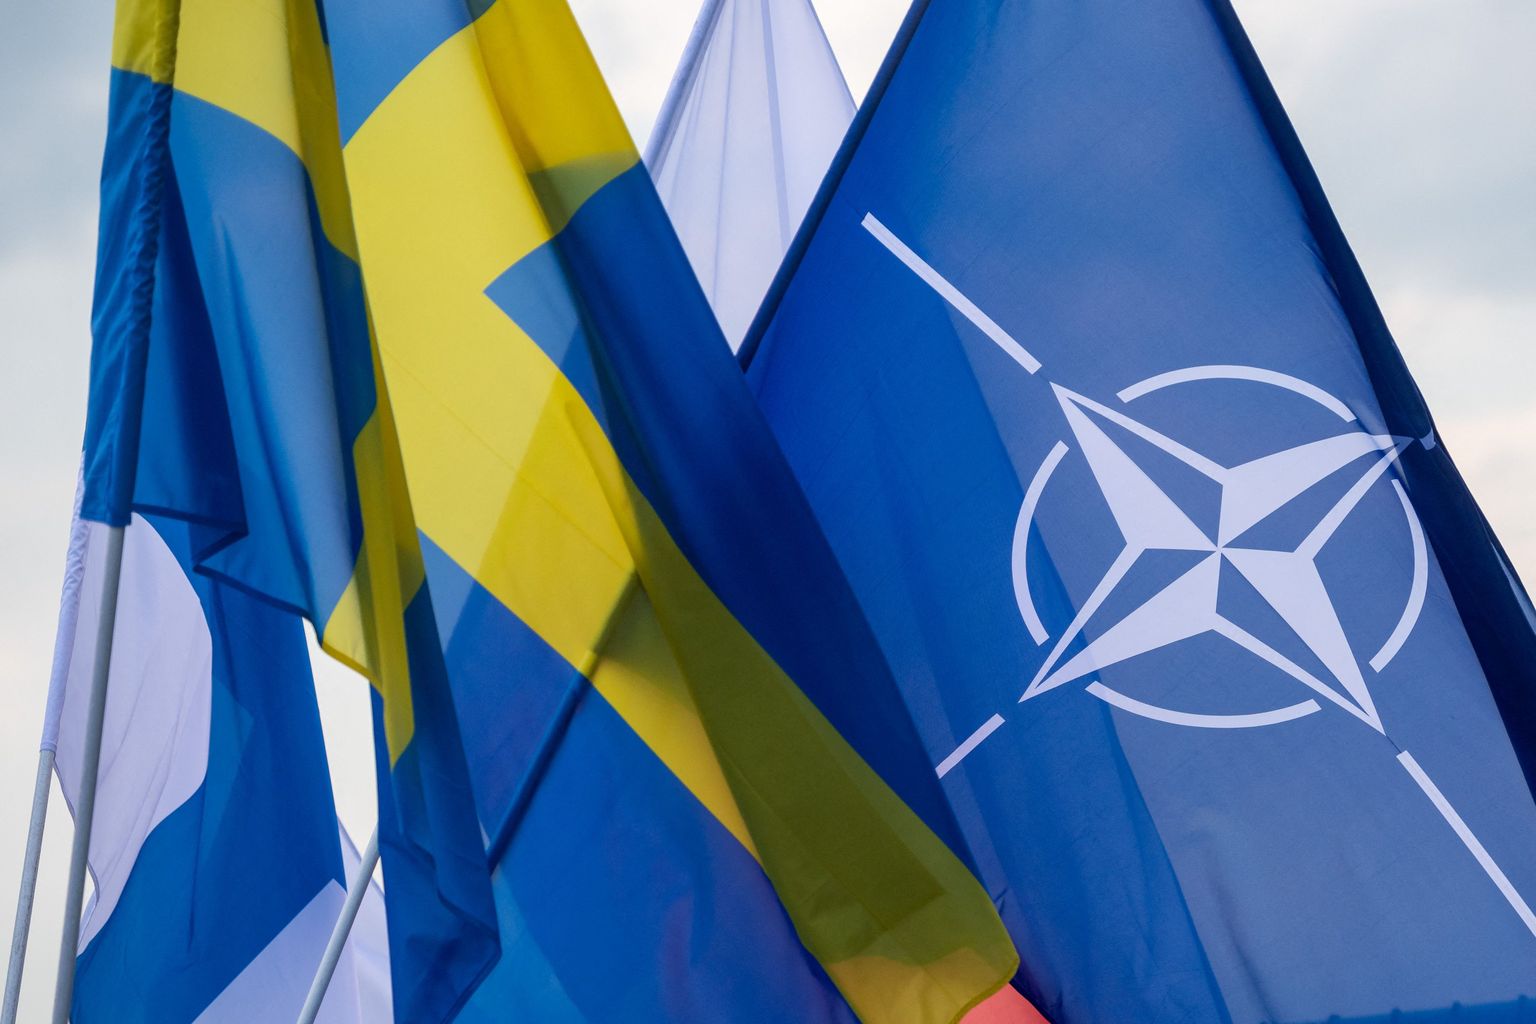 Soome, Rootsi ja NATO lipud.